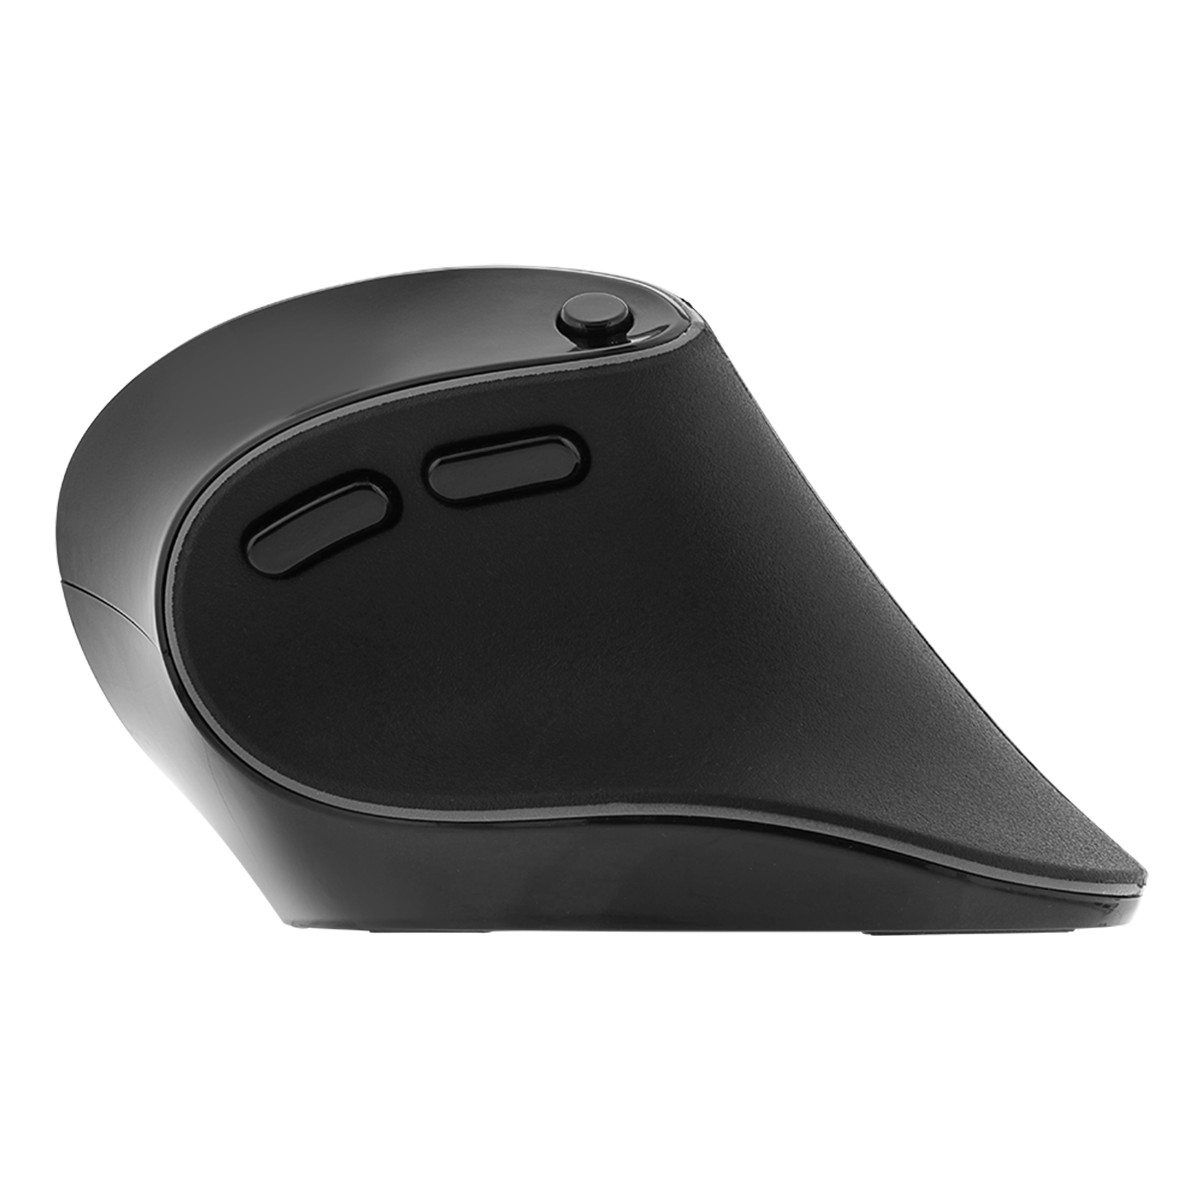 Deltaco Office Trådlös ergonomisk mus, högerhänt, 2.4GHz